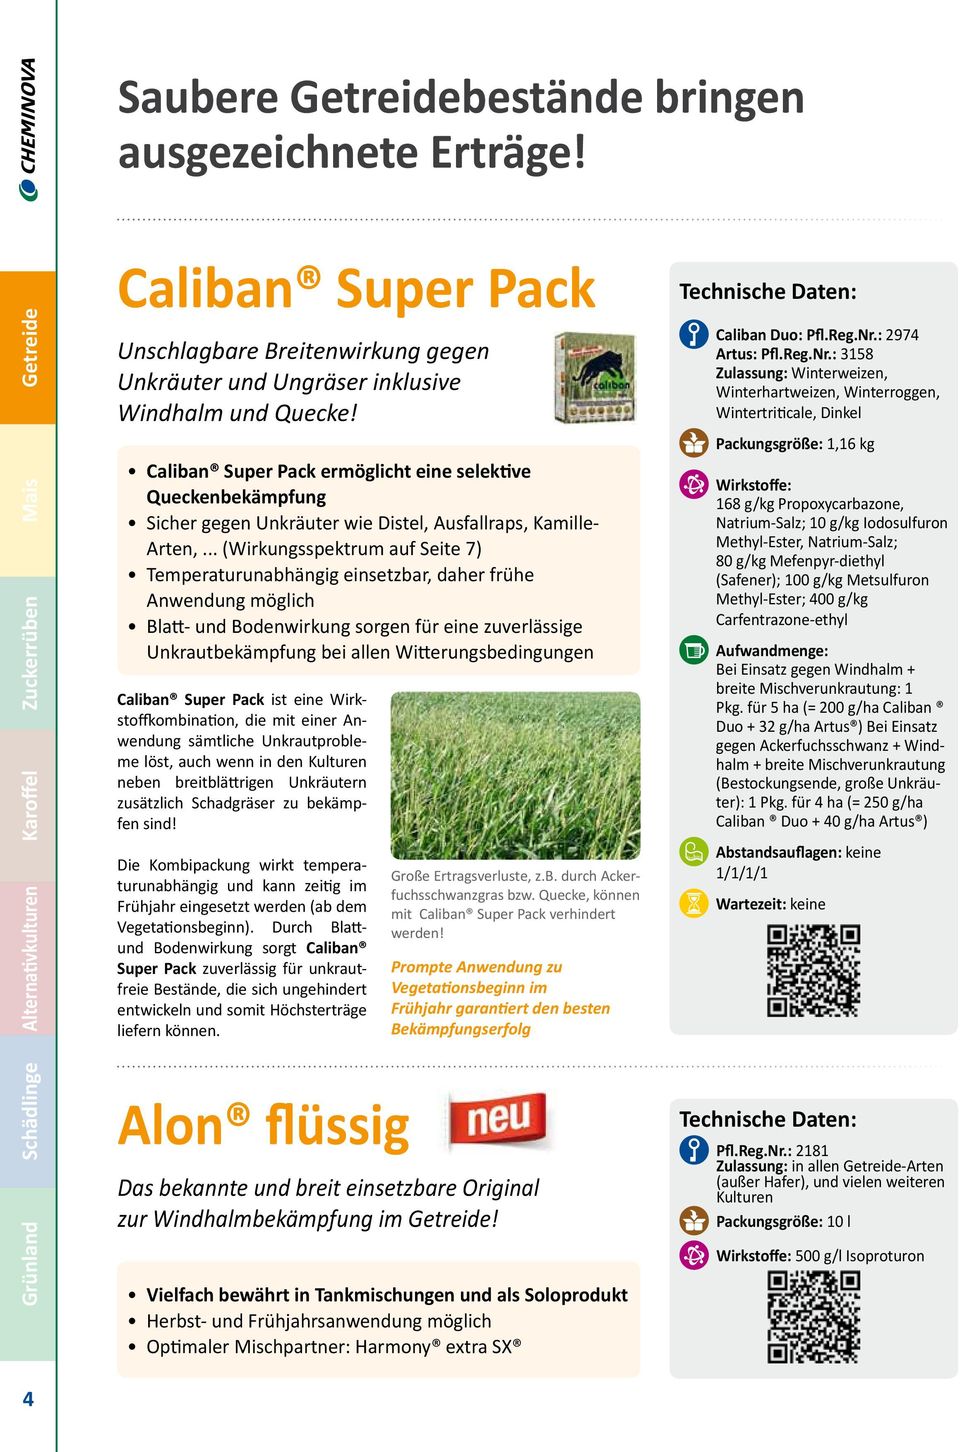 Caliban Super Pack ermöglicht eine selektive Queckenbekämpfung Sicher gegen Unkräuter wie Distel, Ausfallraps, Kamille- Arten,.